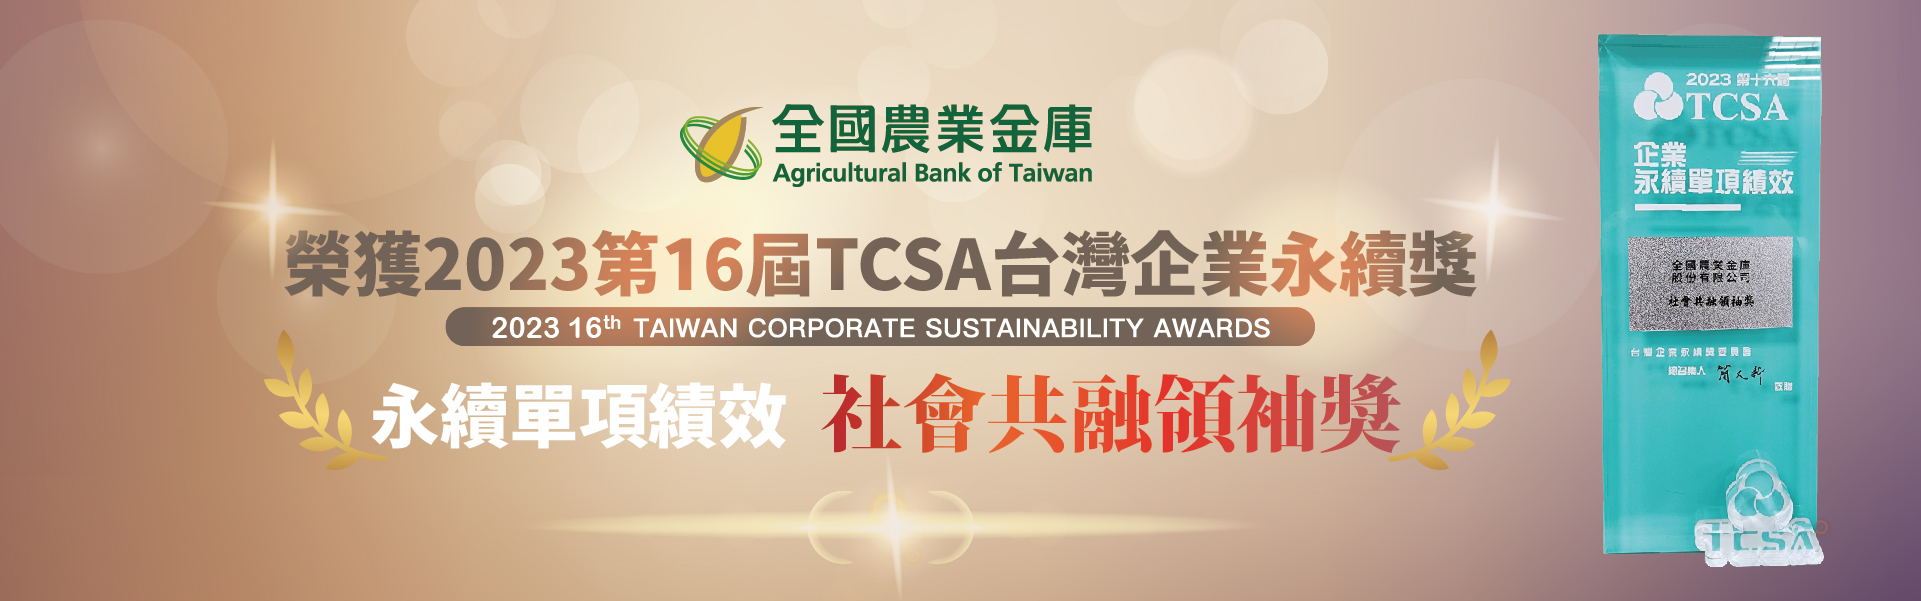 2023第16屆TCSA台灣企業永續獎-社會共融領袖獎